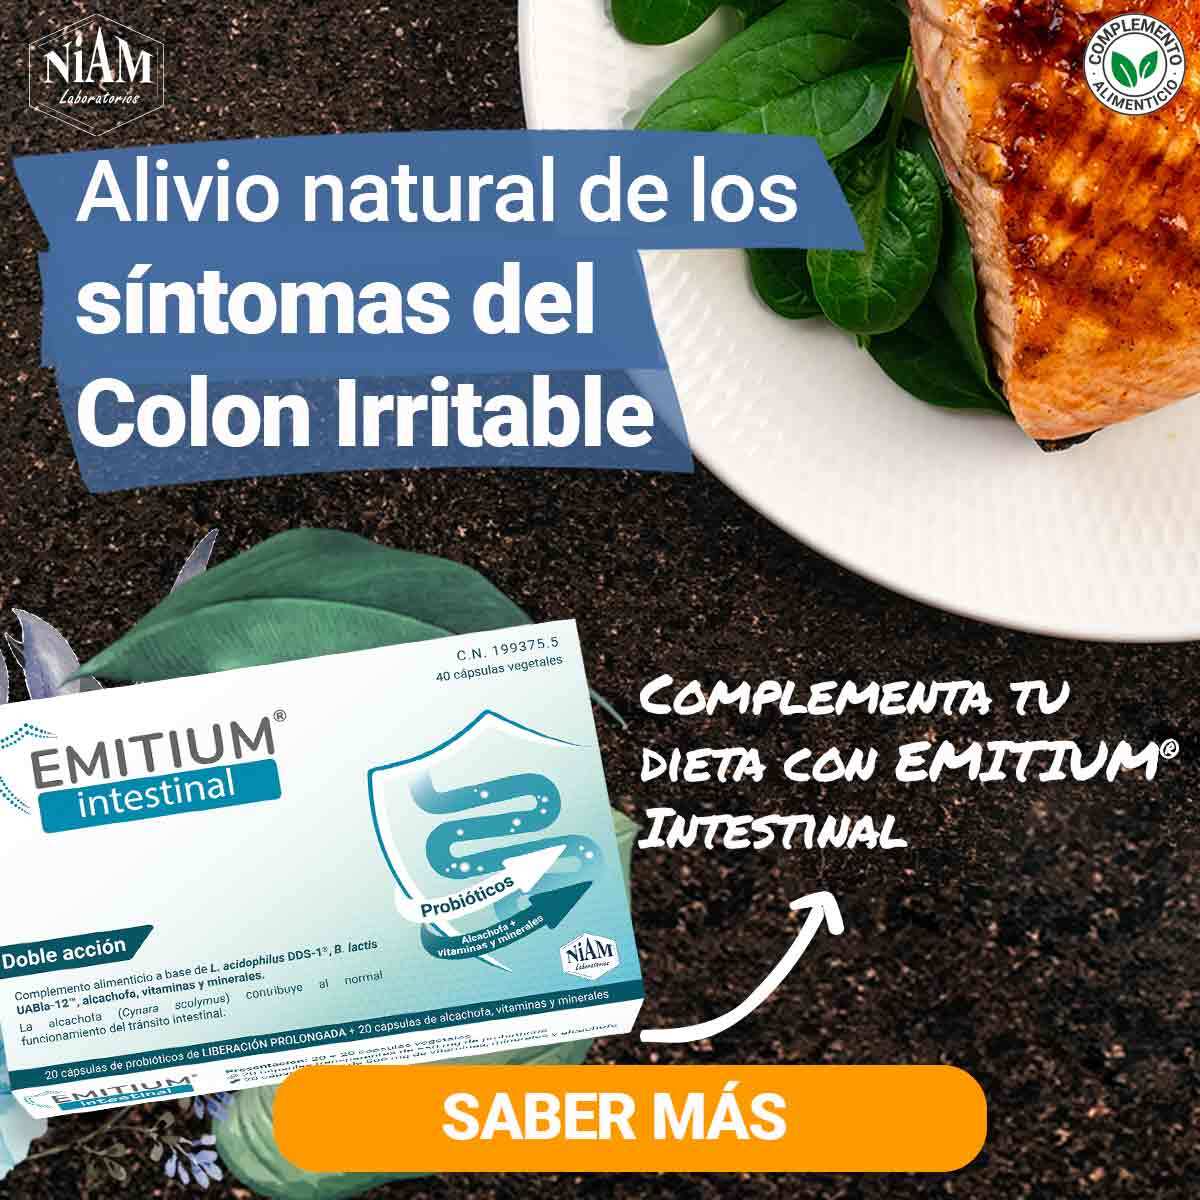 Banner de EMITIUM Intestinal, complemento alimenticio apropiado para combinar en una dieta para colon irritable.